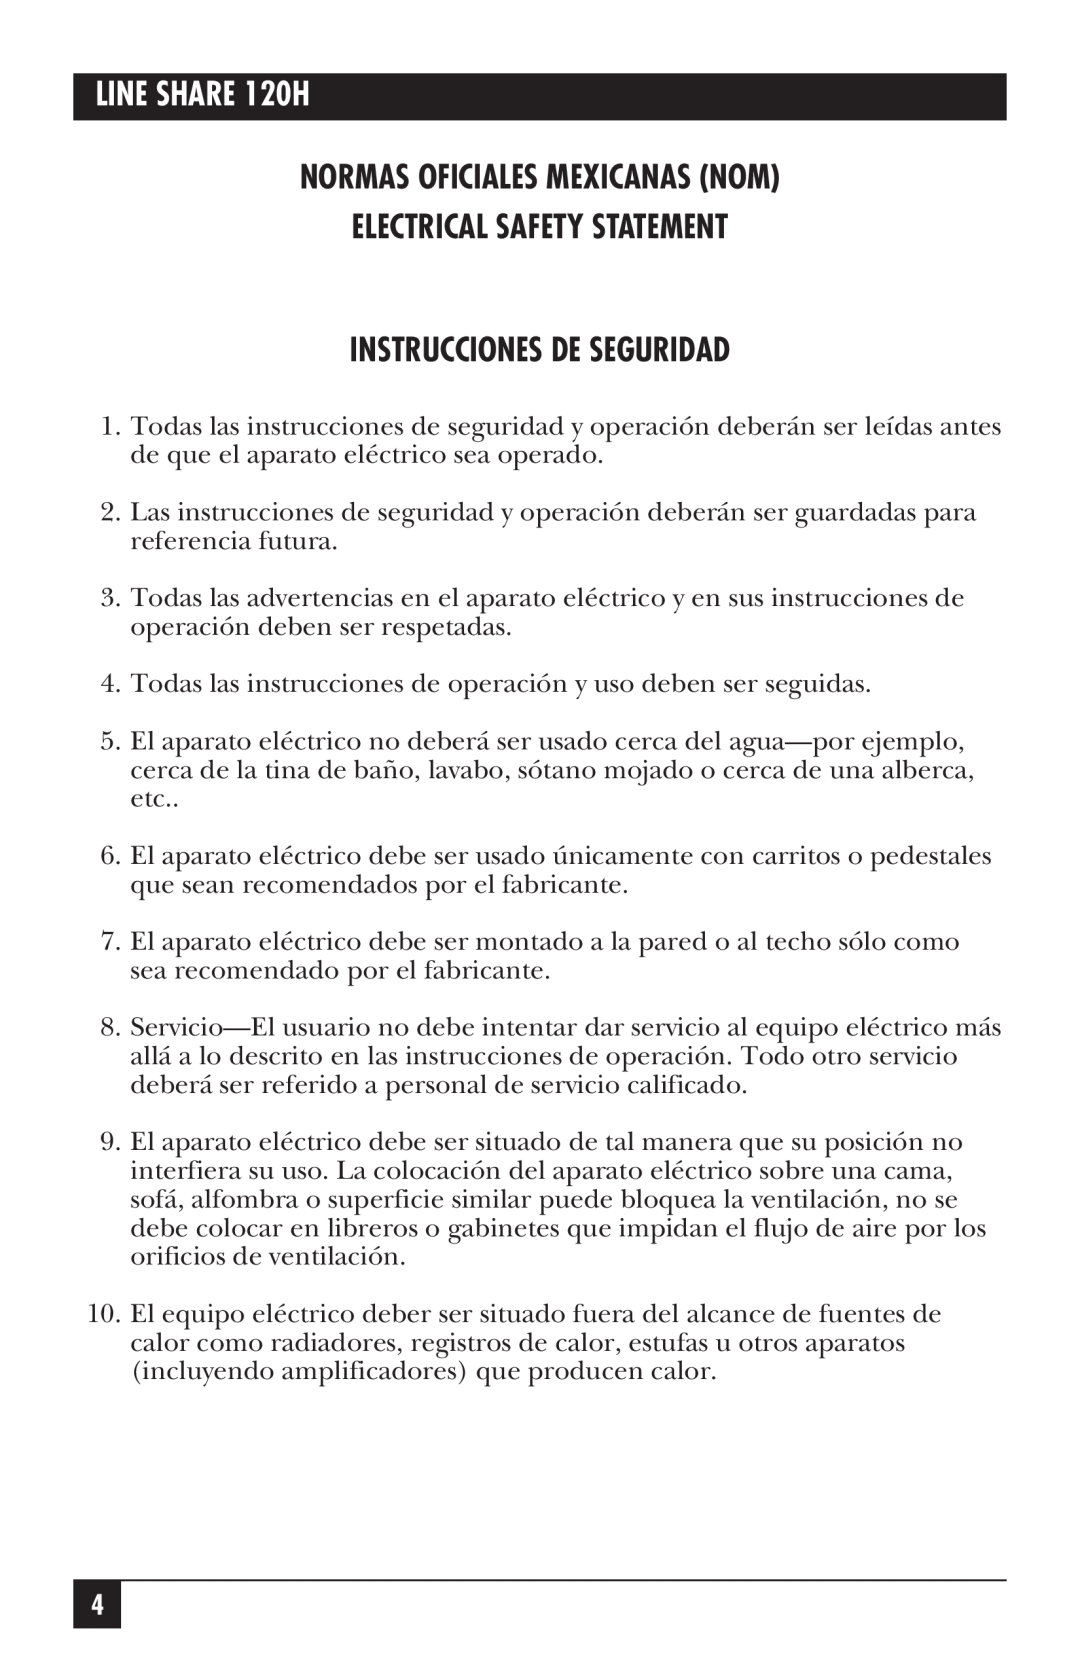 Black Box manual LINE SHARE 120H, Normas Oficiales Mexicanas Nom Electrical Safety Statement, Instrucciones De Seguridad 